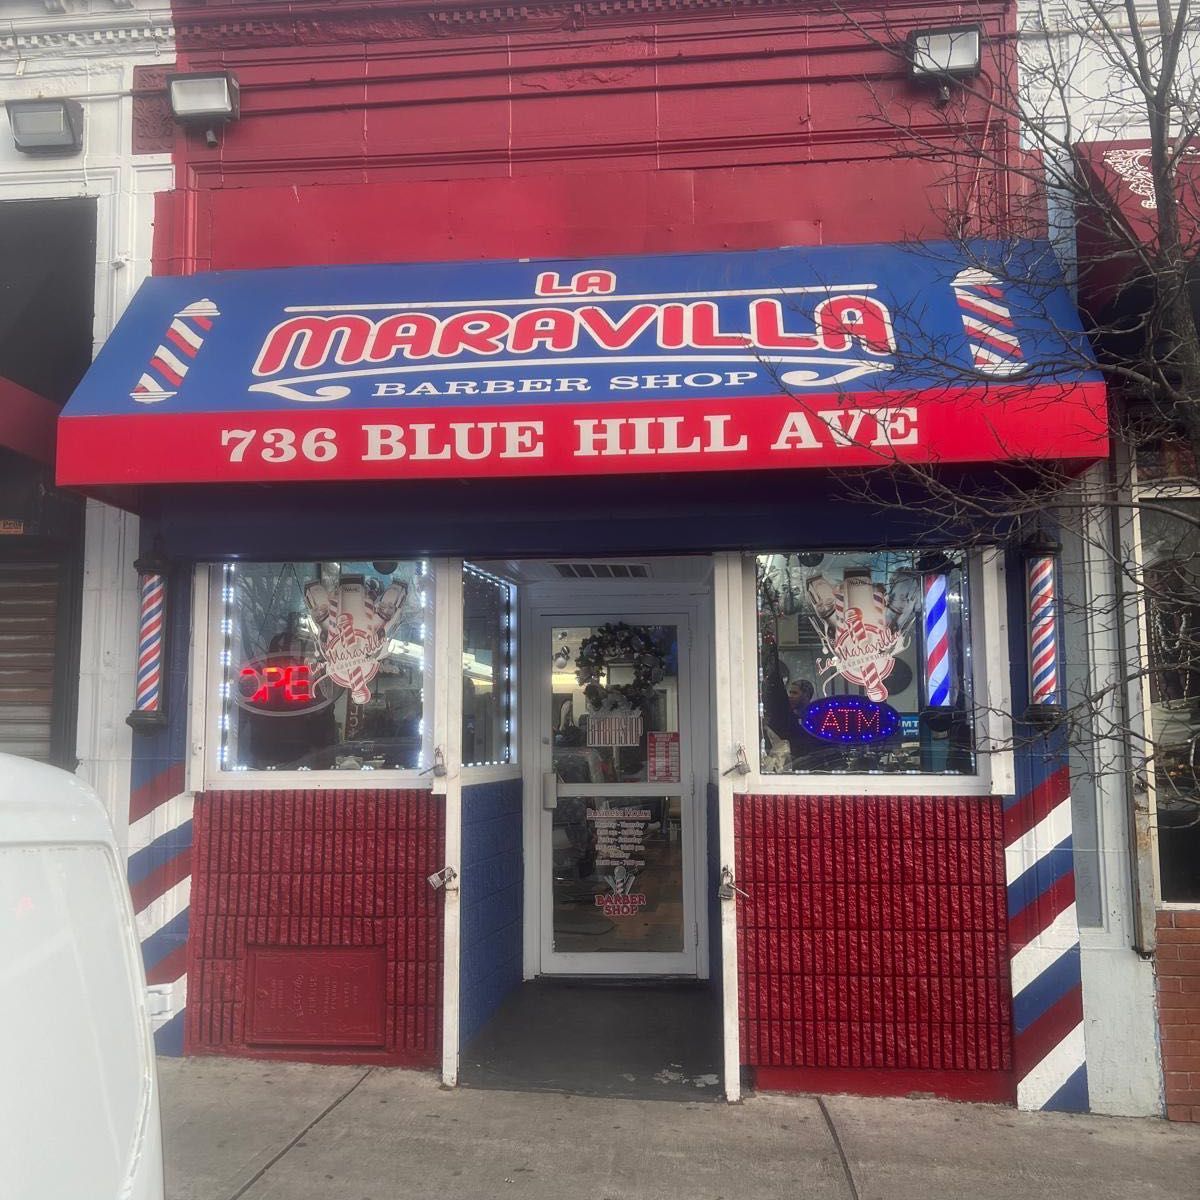 La maravilla barbershop, 736 Blue Hill Ave, Dorchester, 02121